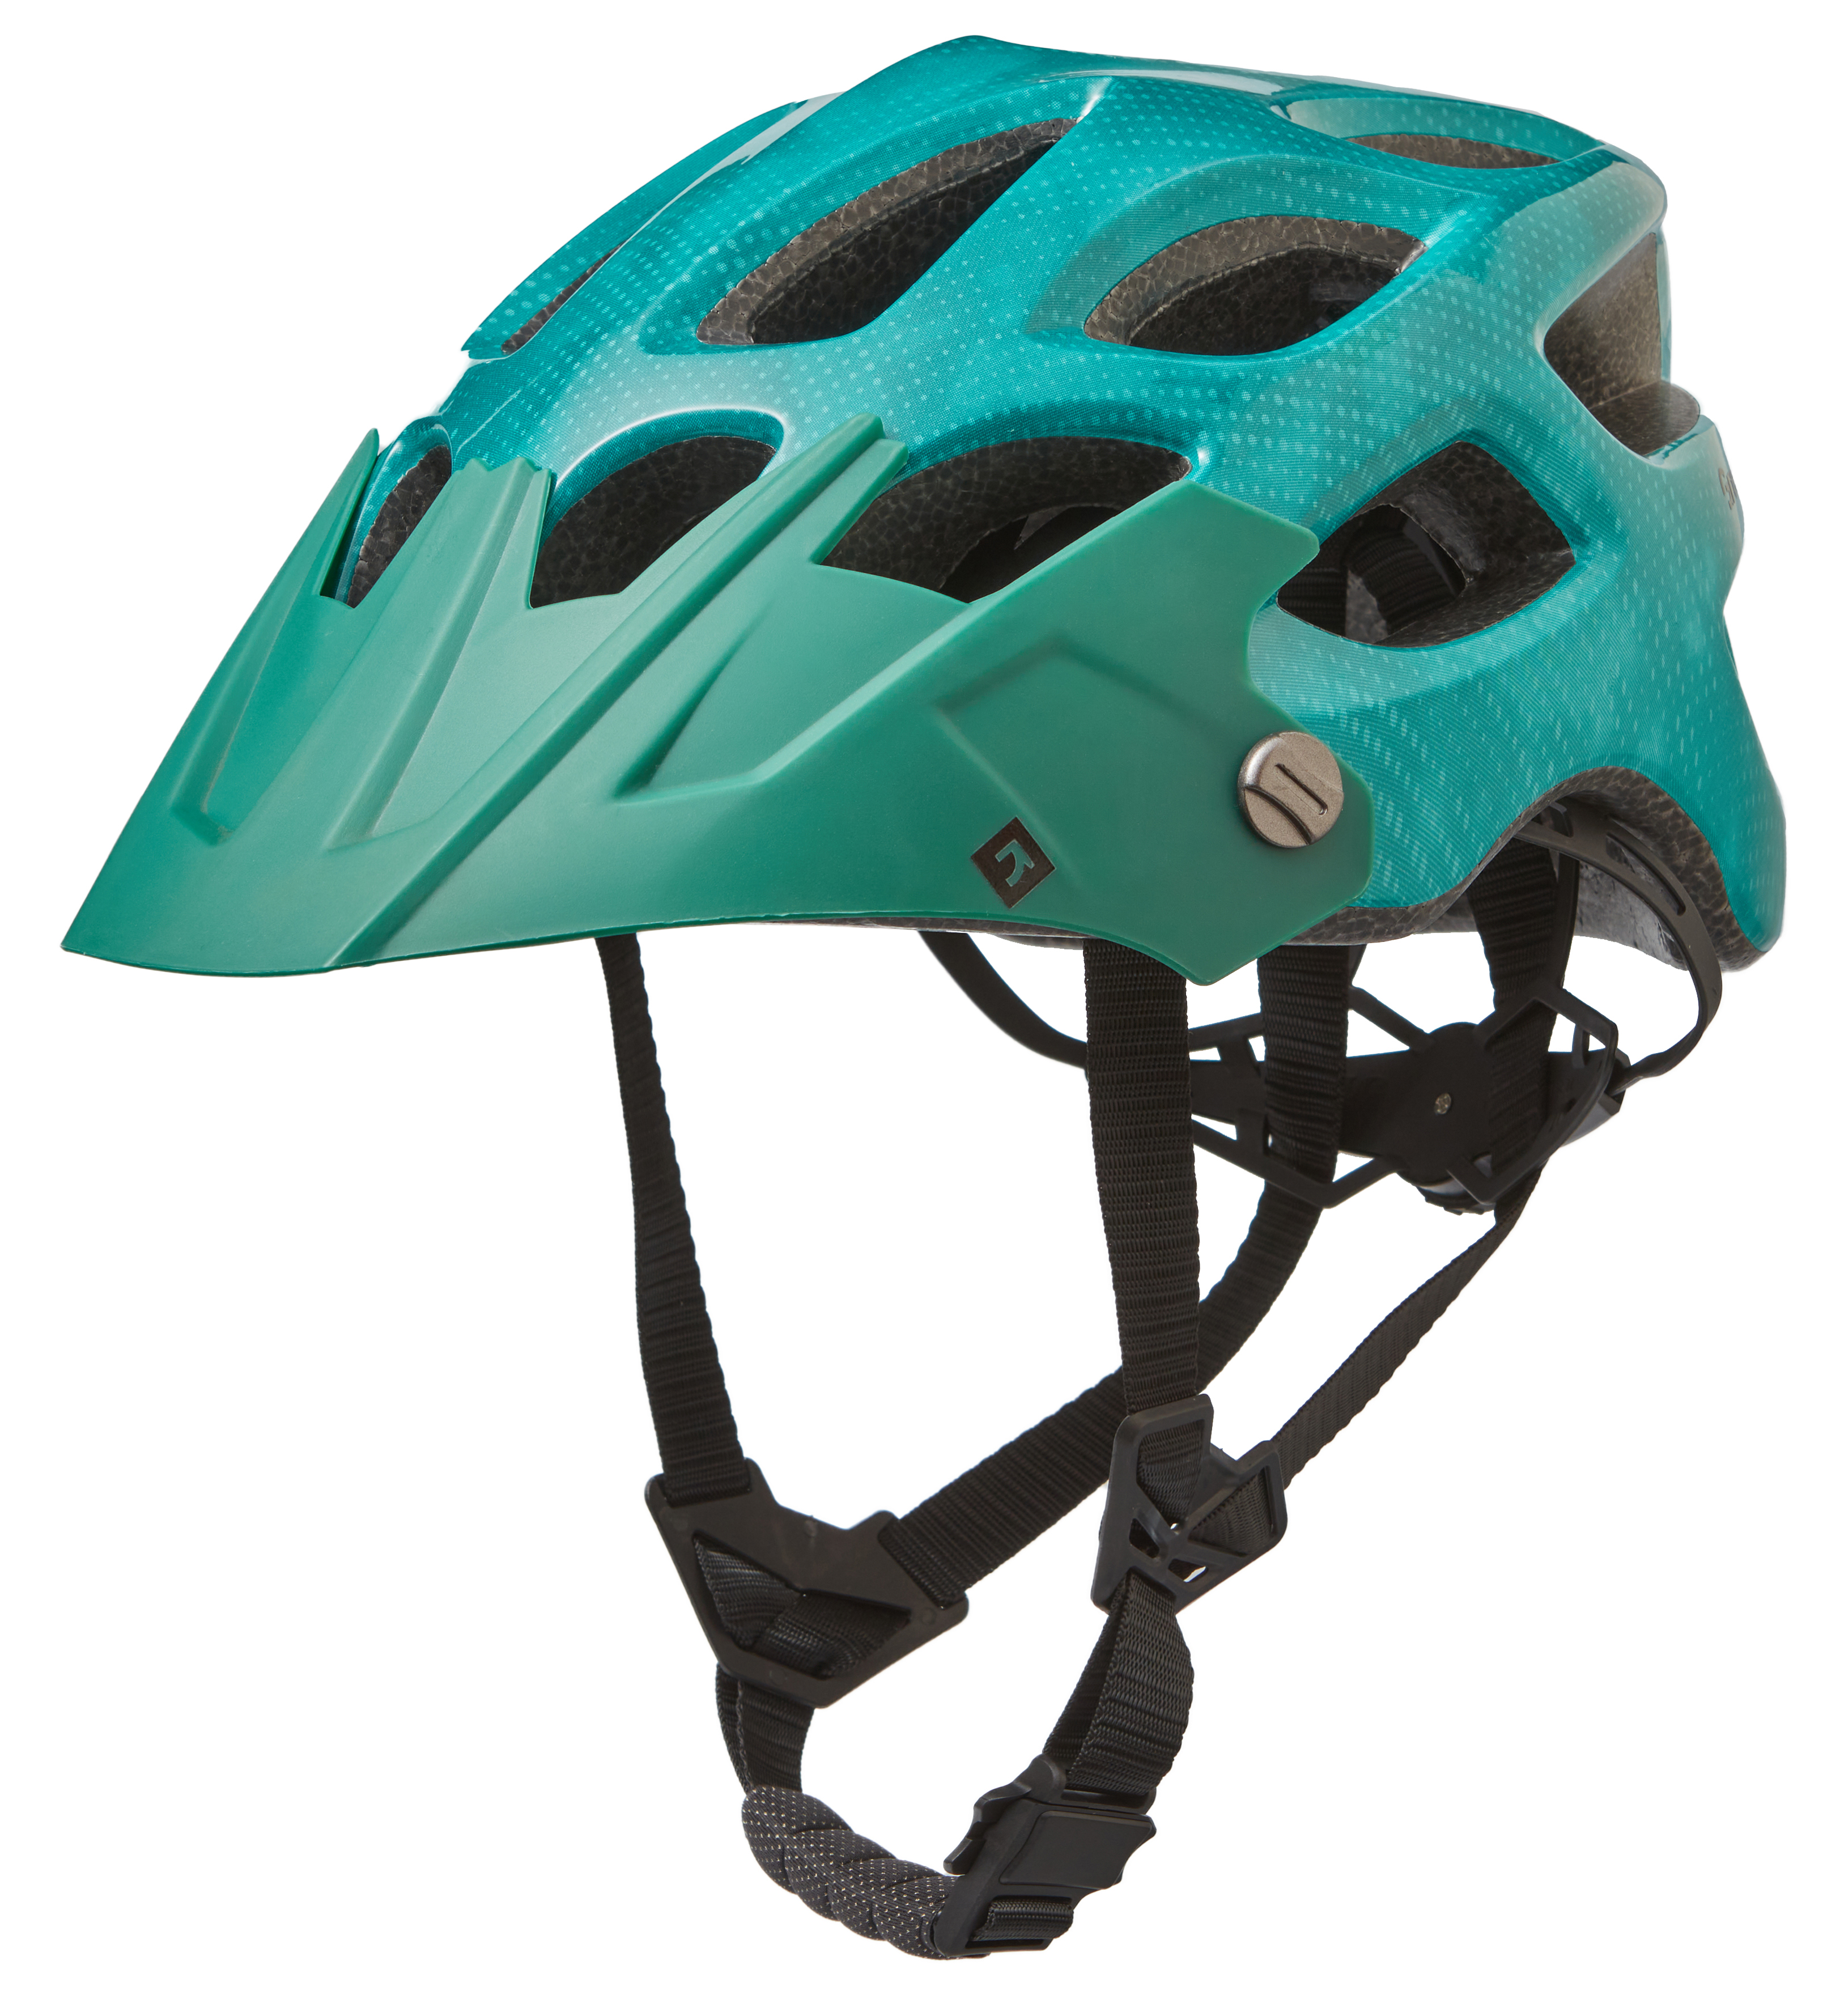 Шлем Green Cycle Revenge RS размер 58-61см зеленый